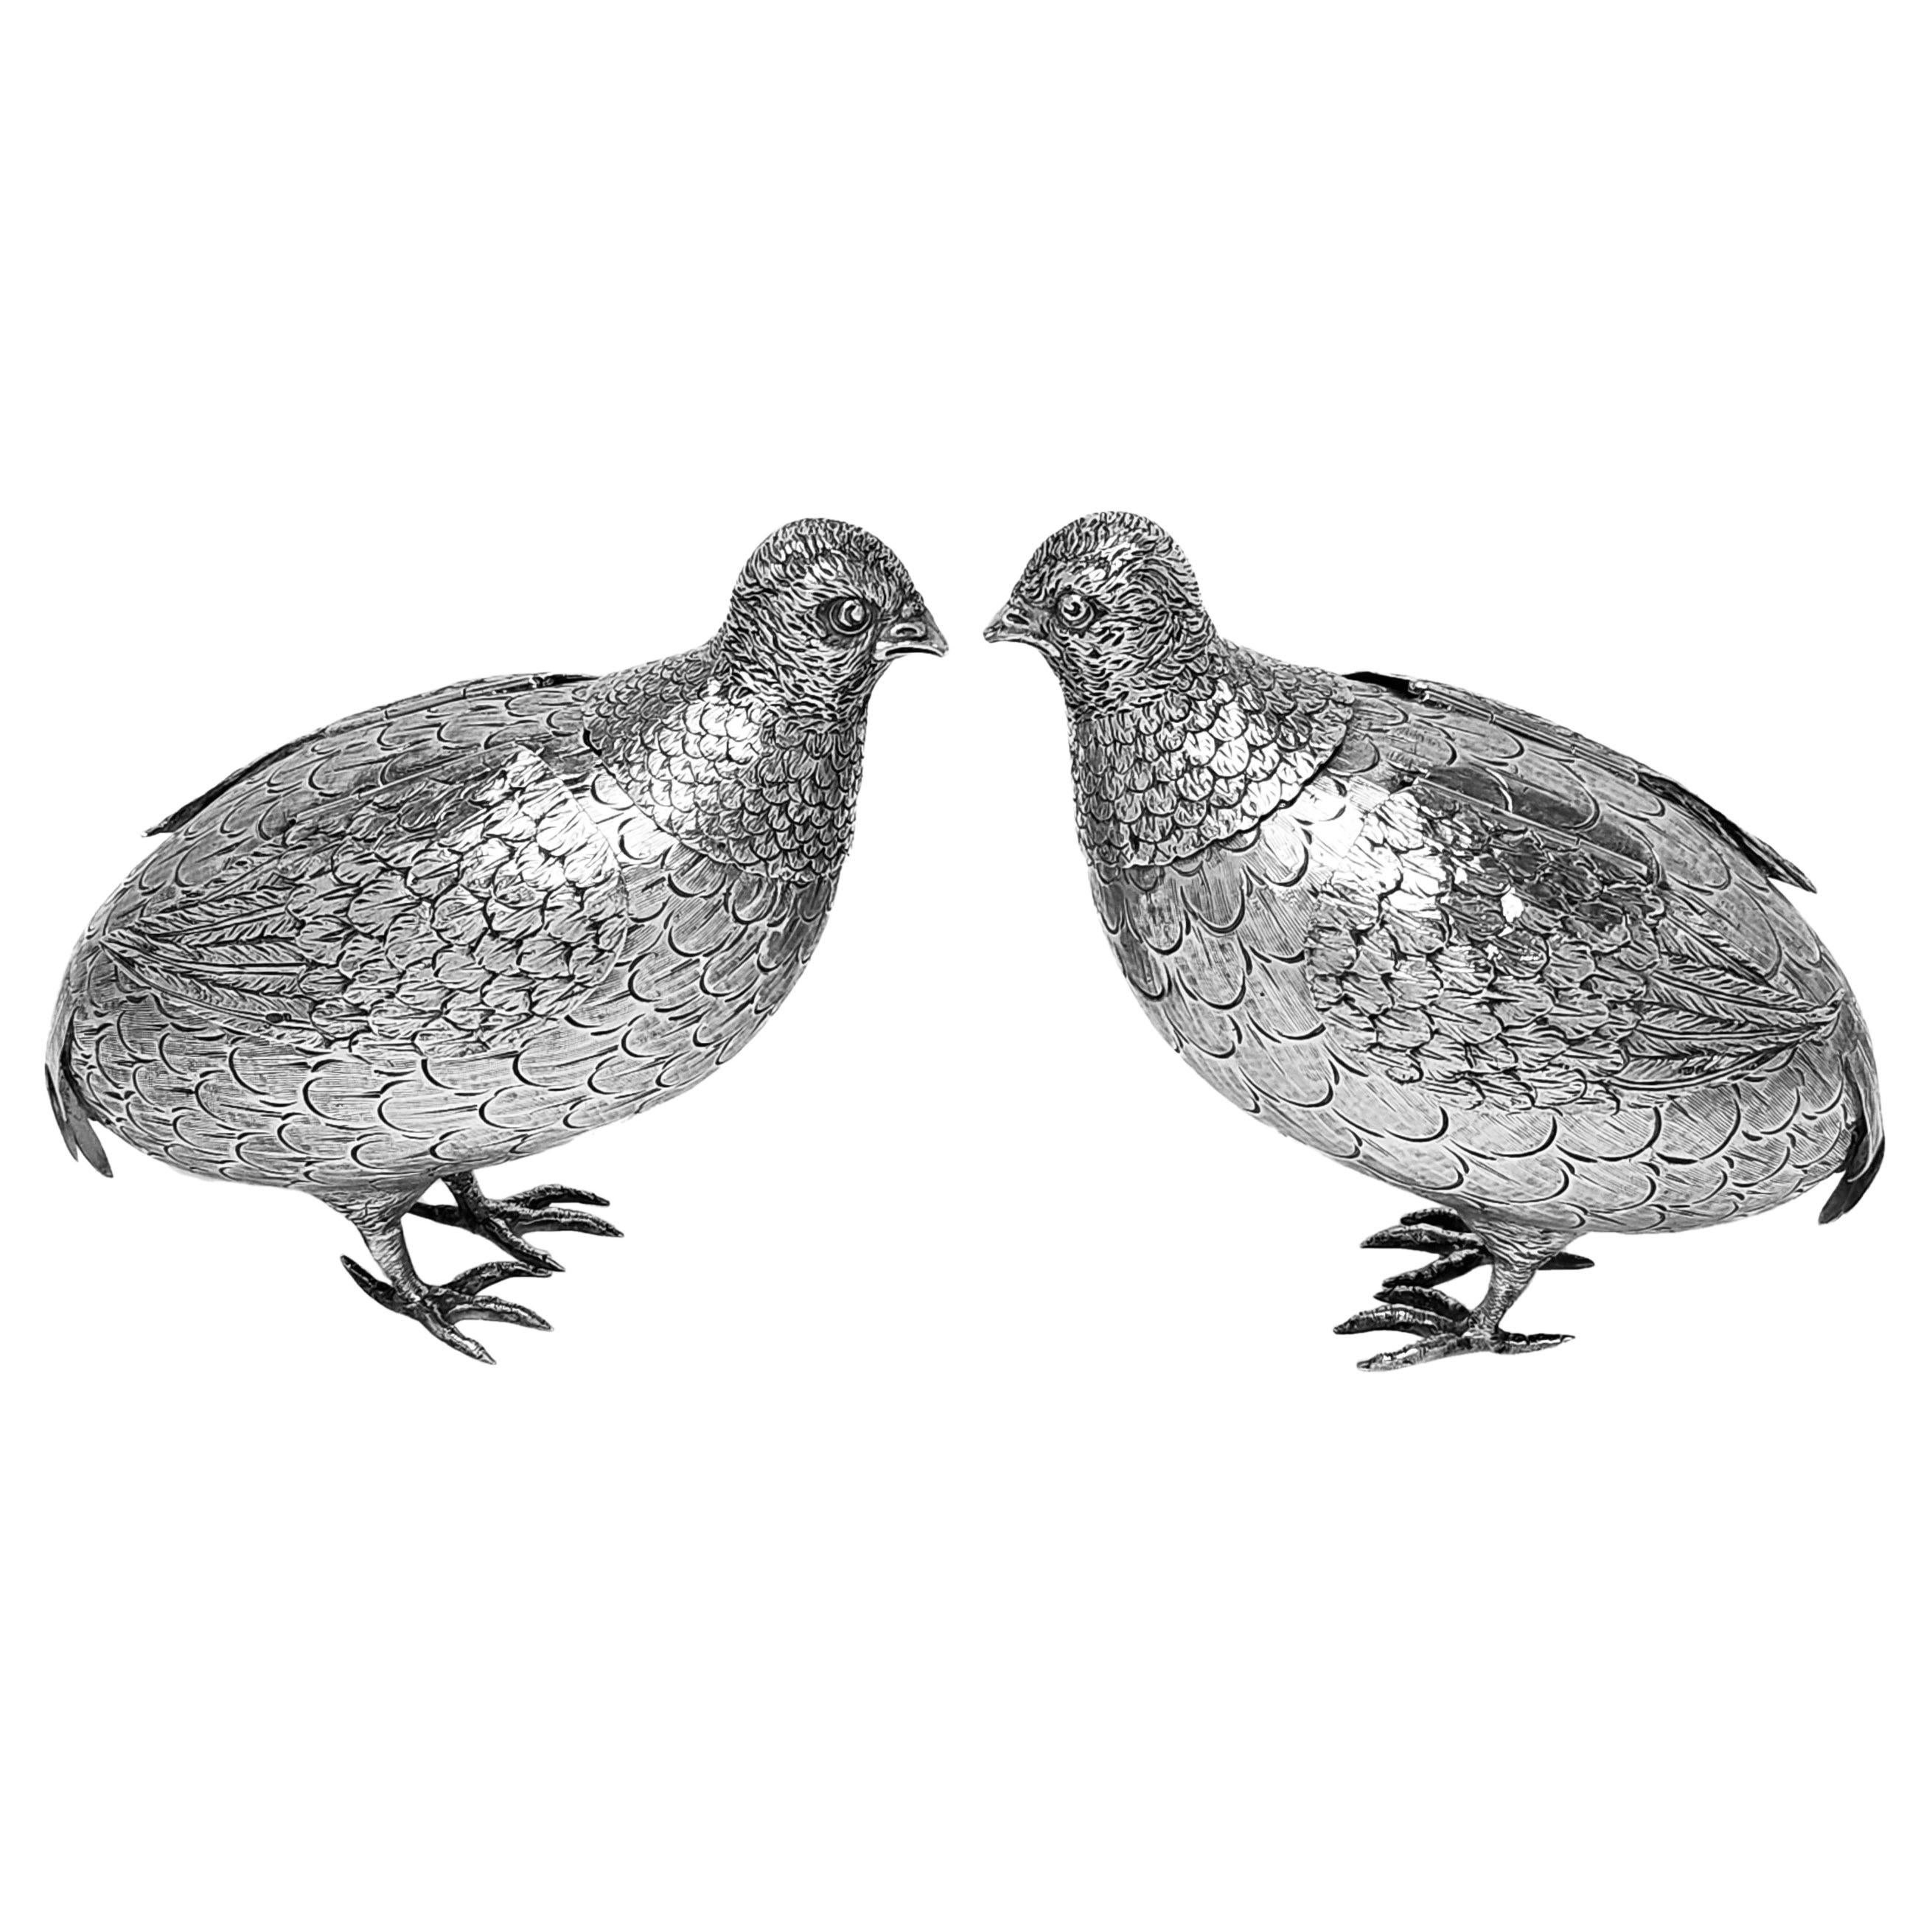 Ein Paar schöne Antique Silver Modell Grouse mit einer guten Liebe zum Detail erstellt. Diese Sterling Silber Vögel haben Scharnier Silber singt und sind von einer guten Größe. 

Hergestellt in Deutschland um 1909 von Berthold Muller. Chester,